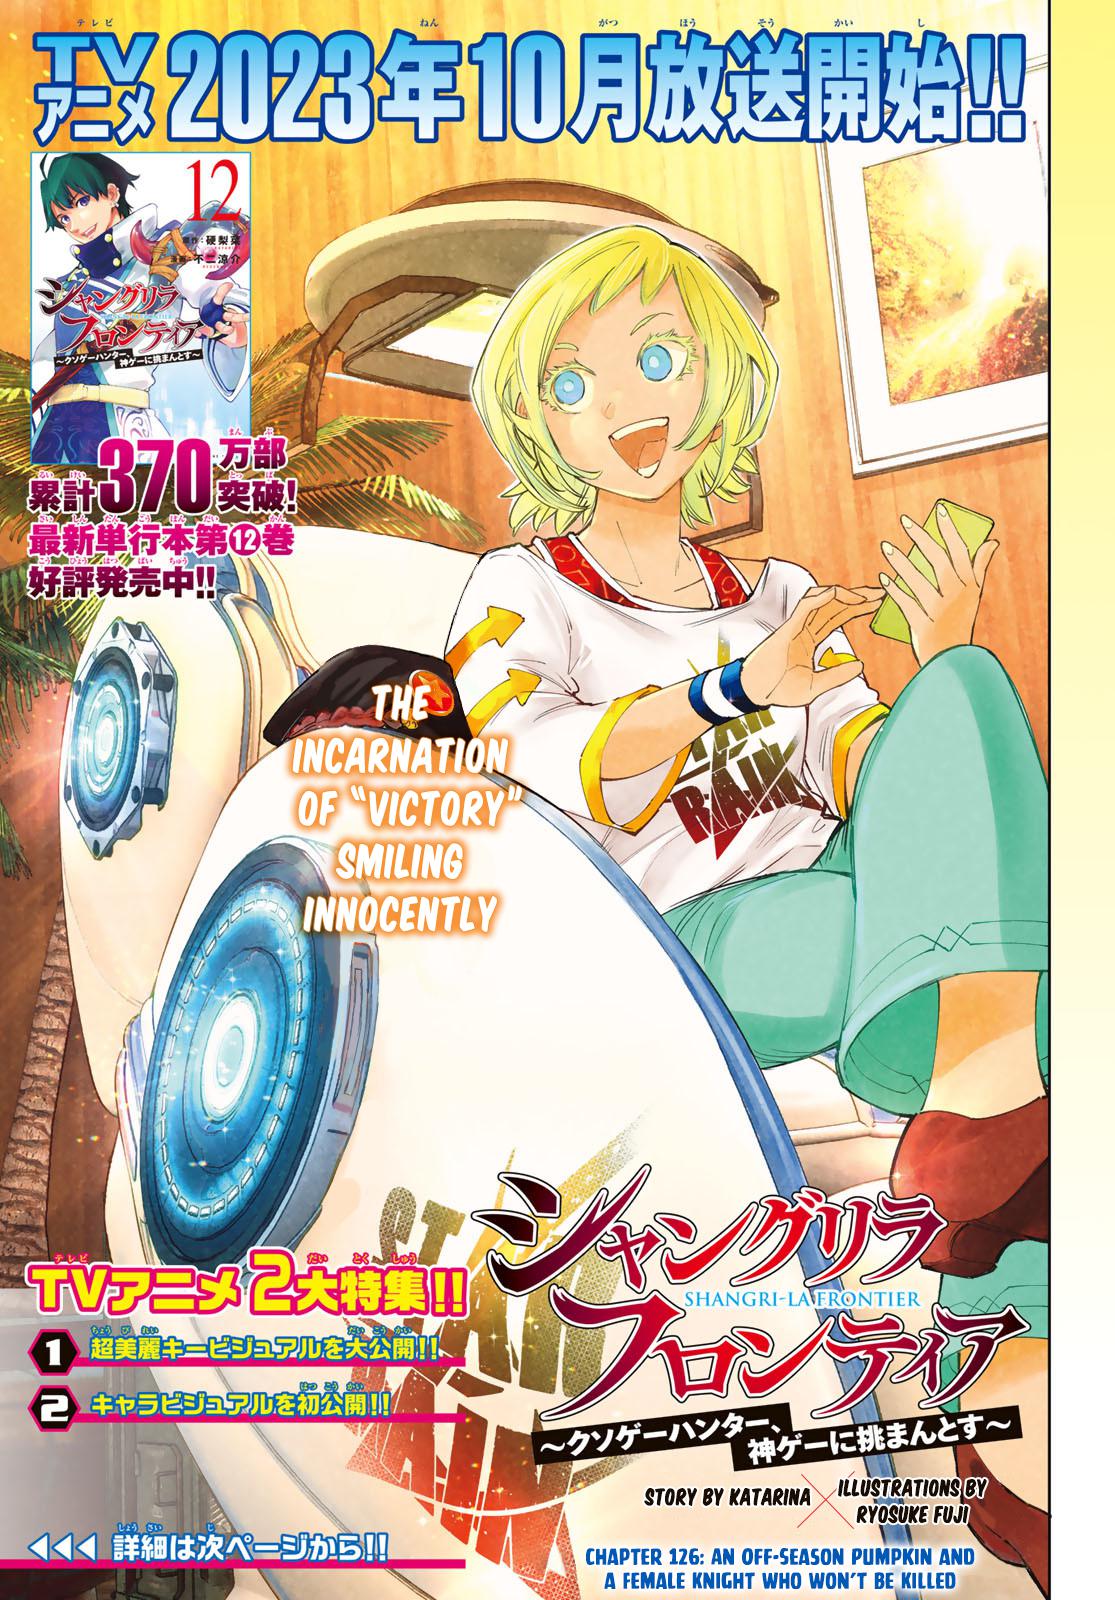 Shangri-La Frontier manga, read Shangri-La Frontier